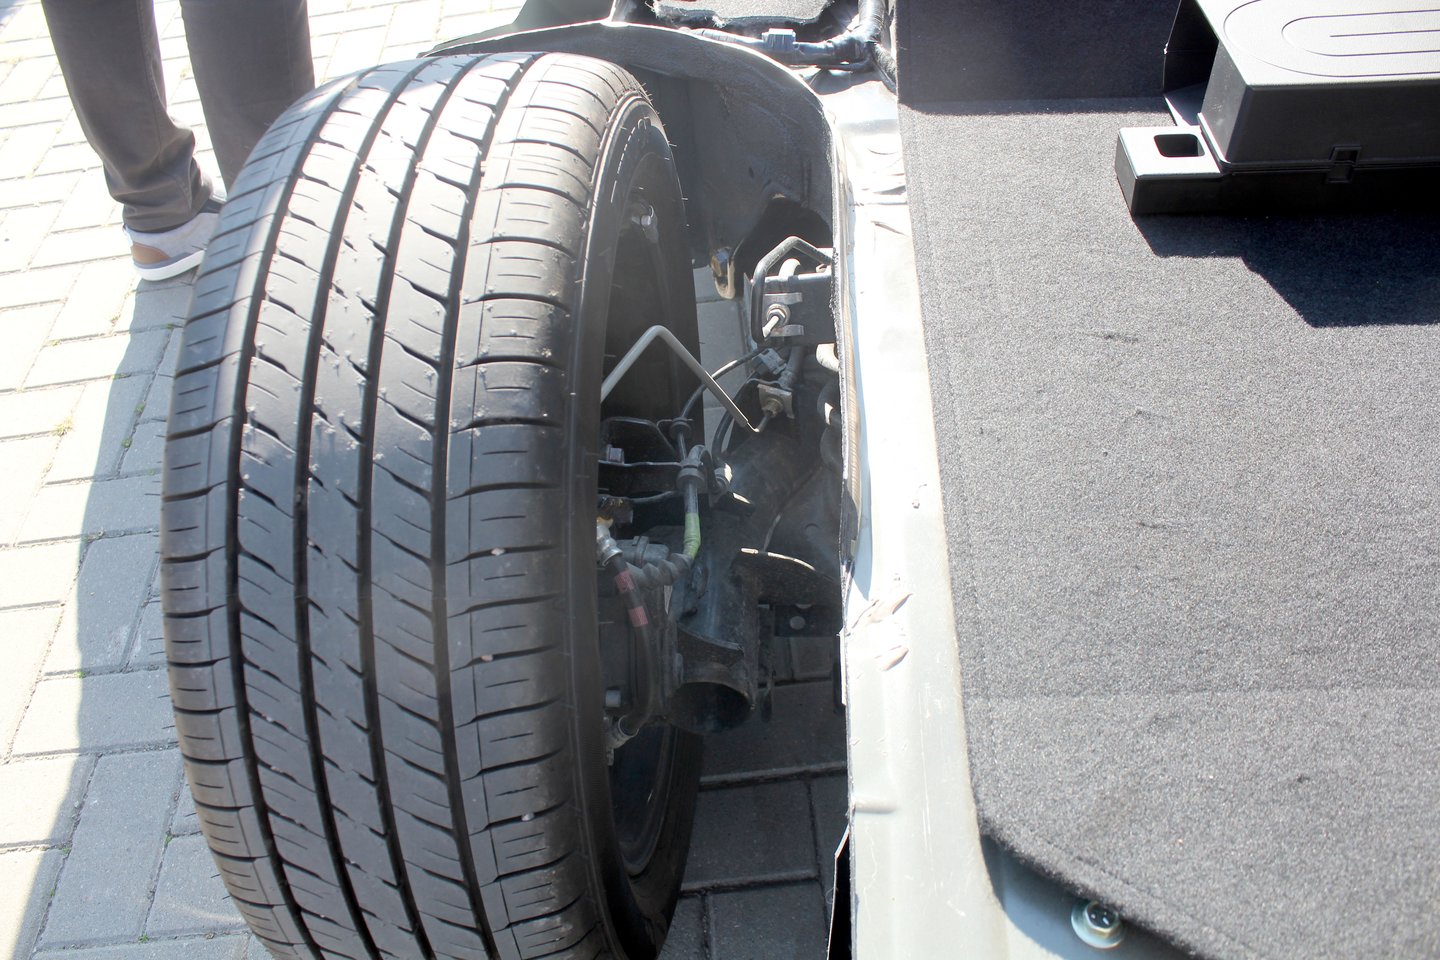  Elektromobilio vidinę sandarą buvo galima išvysti apžiūrėjusios perpus „perpjautą“ „Nissan Leaf“, kuriuo į aikštelę įriedėjo vienas ralio dalyvis.<br> R.Vitkaus nuotr.